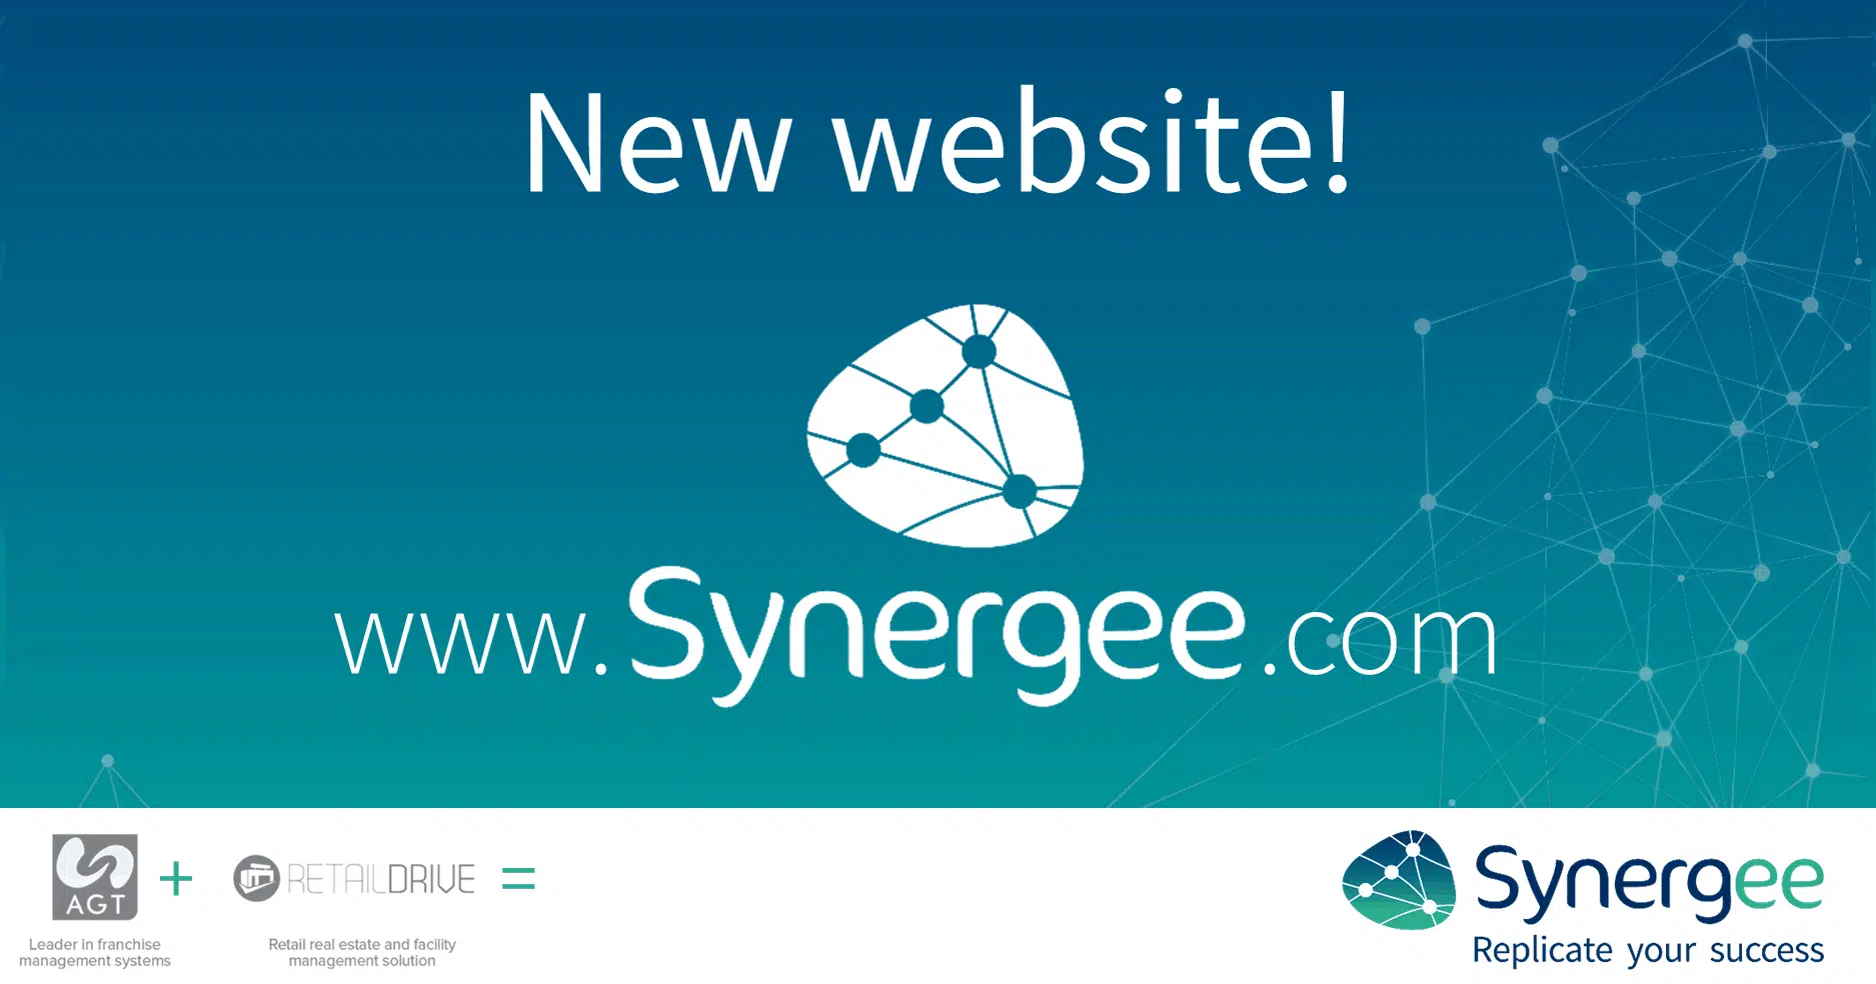 Synergee's website : www.synergee.com